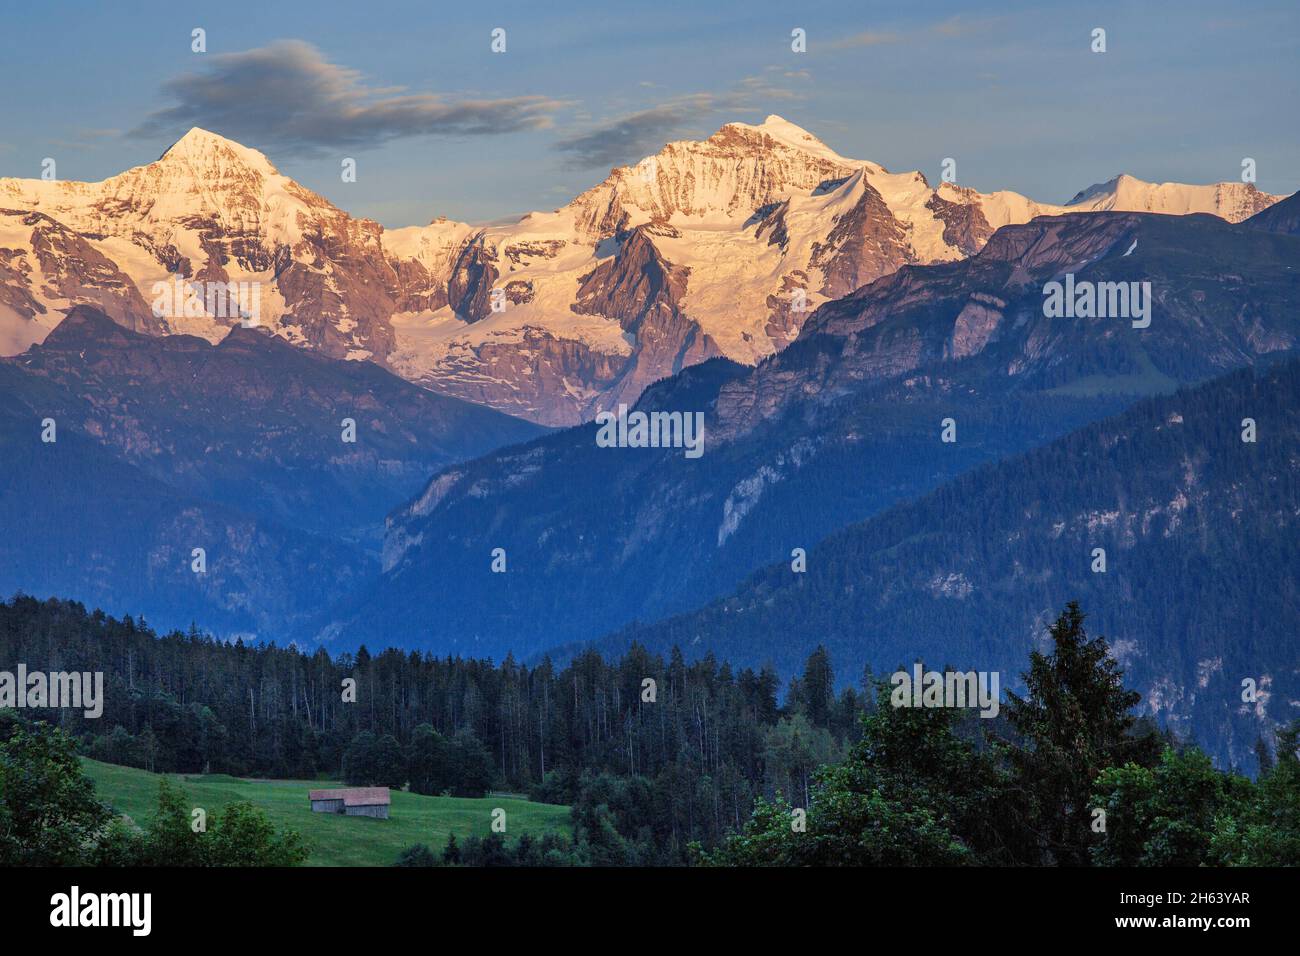 mönch 4107m e jungfrau 4158m al sole della sera, beatenberg, alpi bernesi, oberland bernese, cantone di berna, svizzera Foto Stock